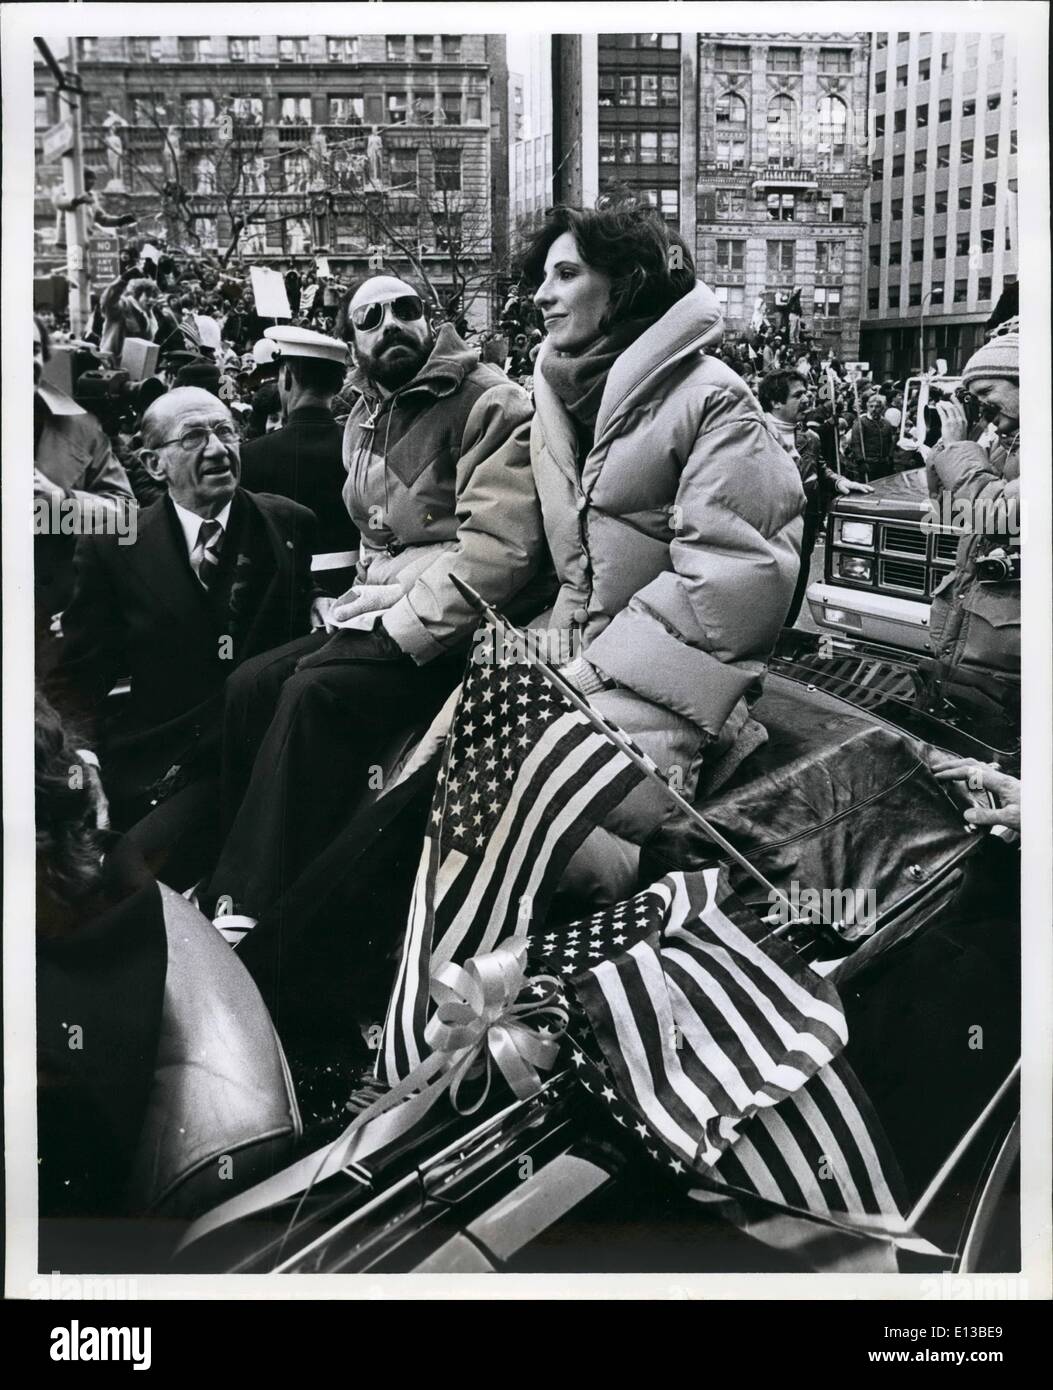 Febbraio 29, 2012 - NEW YORK ha mostrato il suo affetto per il restituito ostaggi americani da avendo un tradizionale Ticker tape Parade fino Lower Broadway. Foto Stock